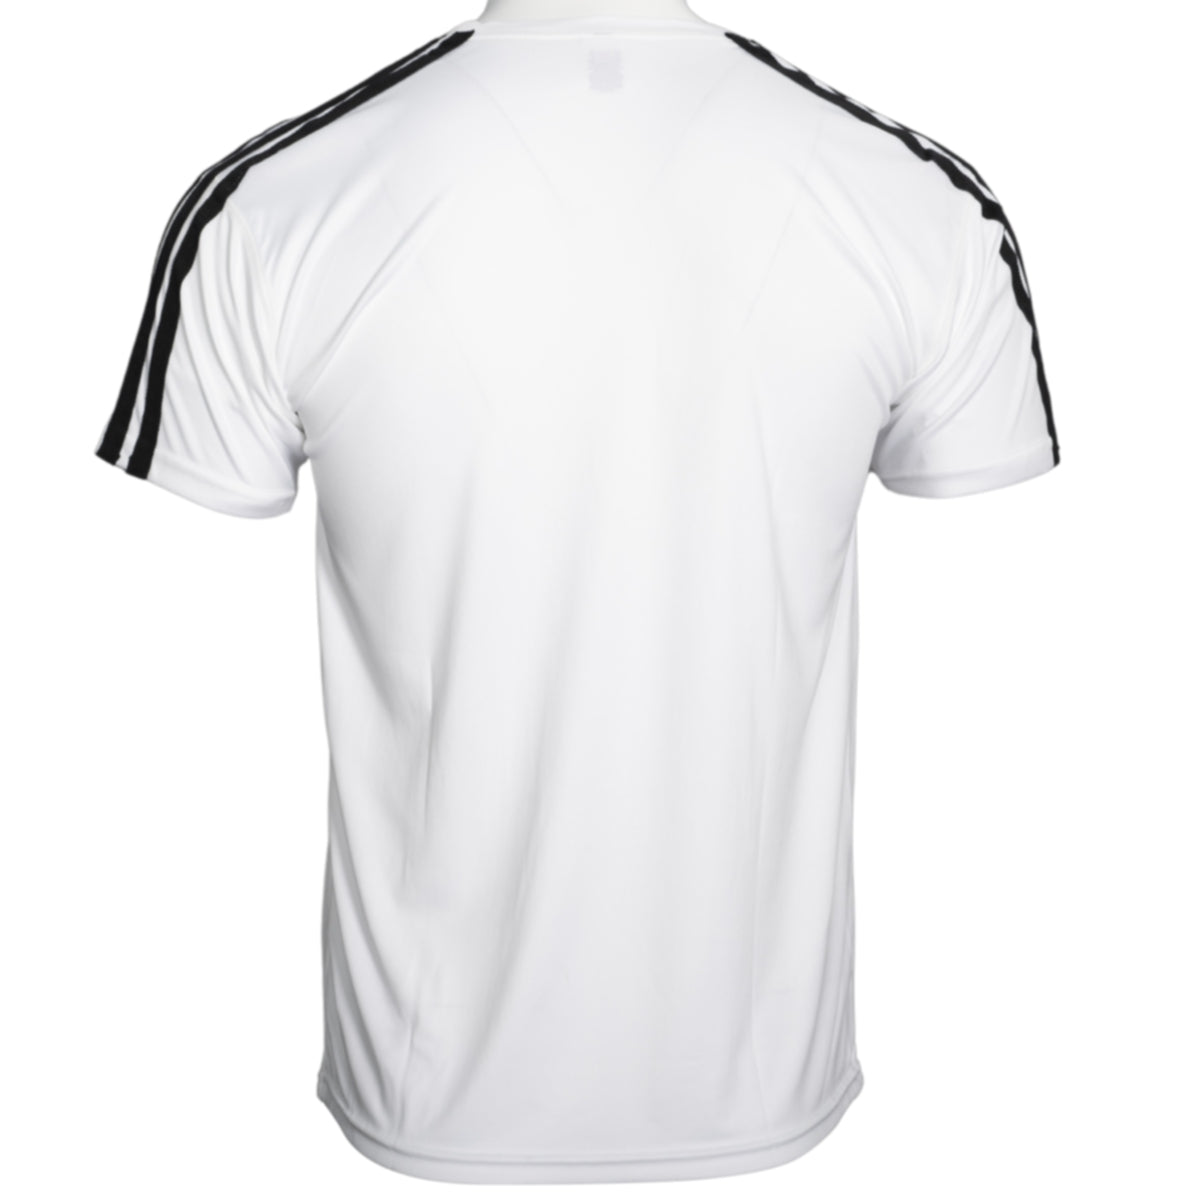 Todd Ingram #3 white Adidas T-shirt Costume Jersey